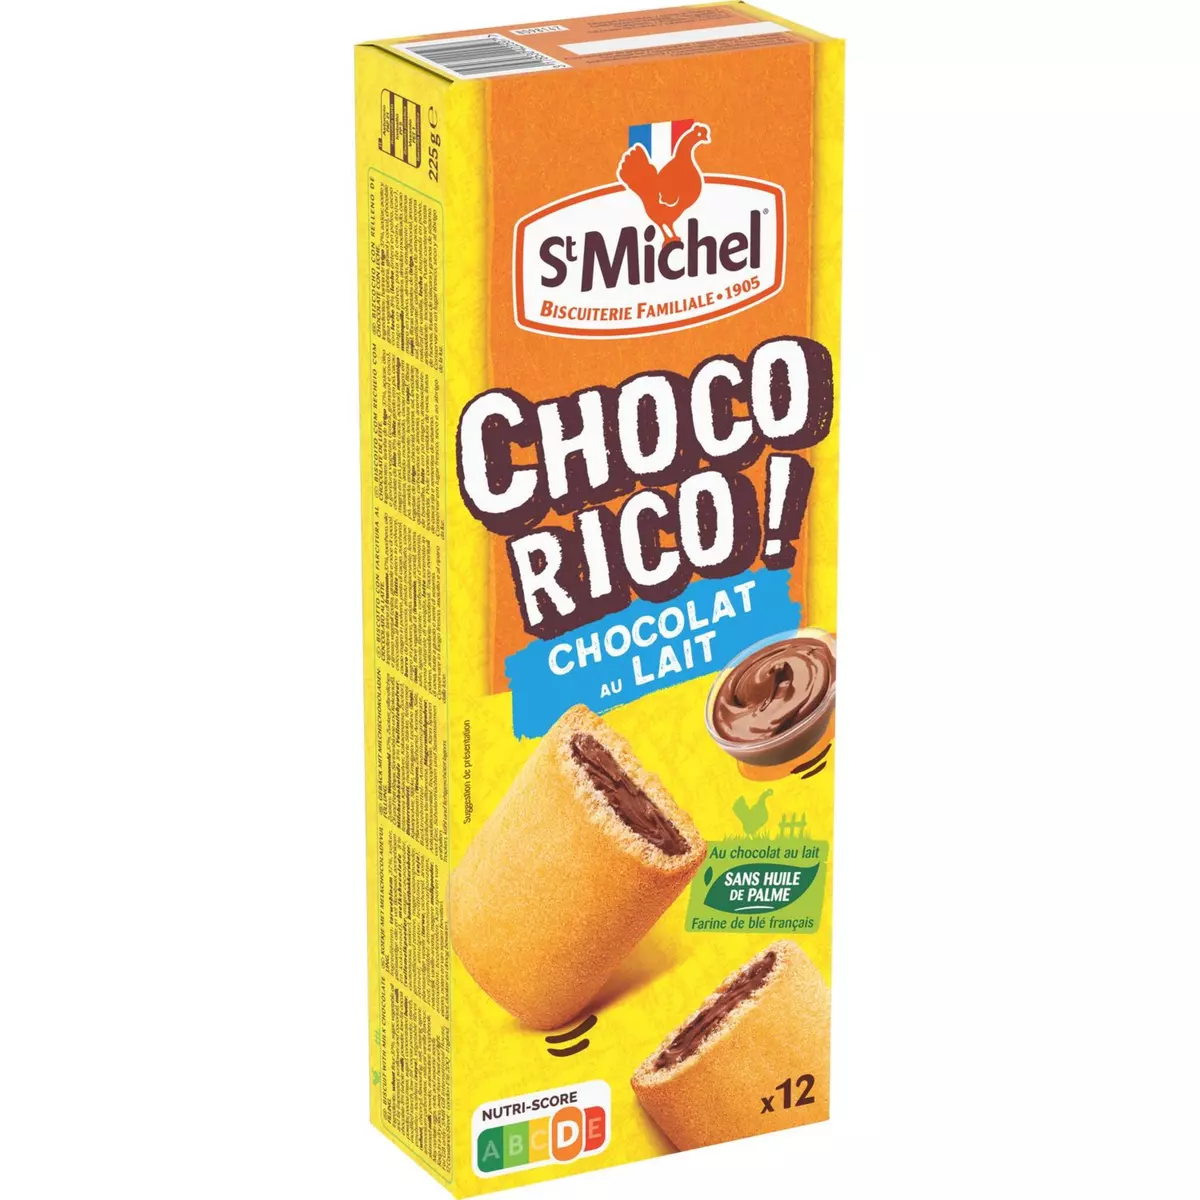 ST MICHEL Choco Rico biscuits au chocolat au lait 12 biscuits 225g